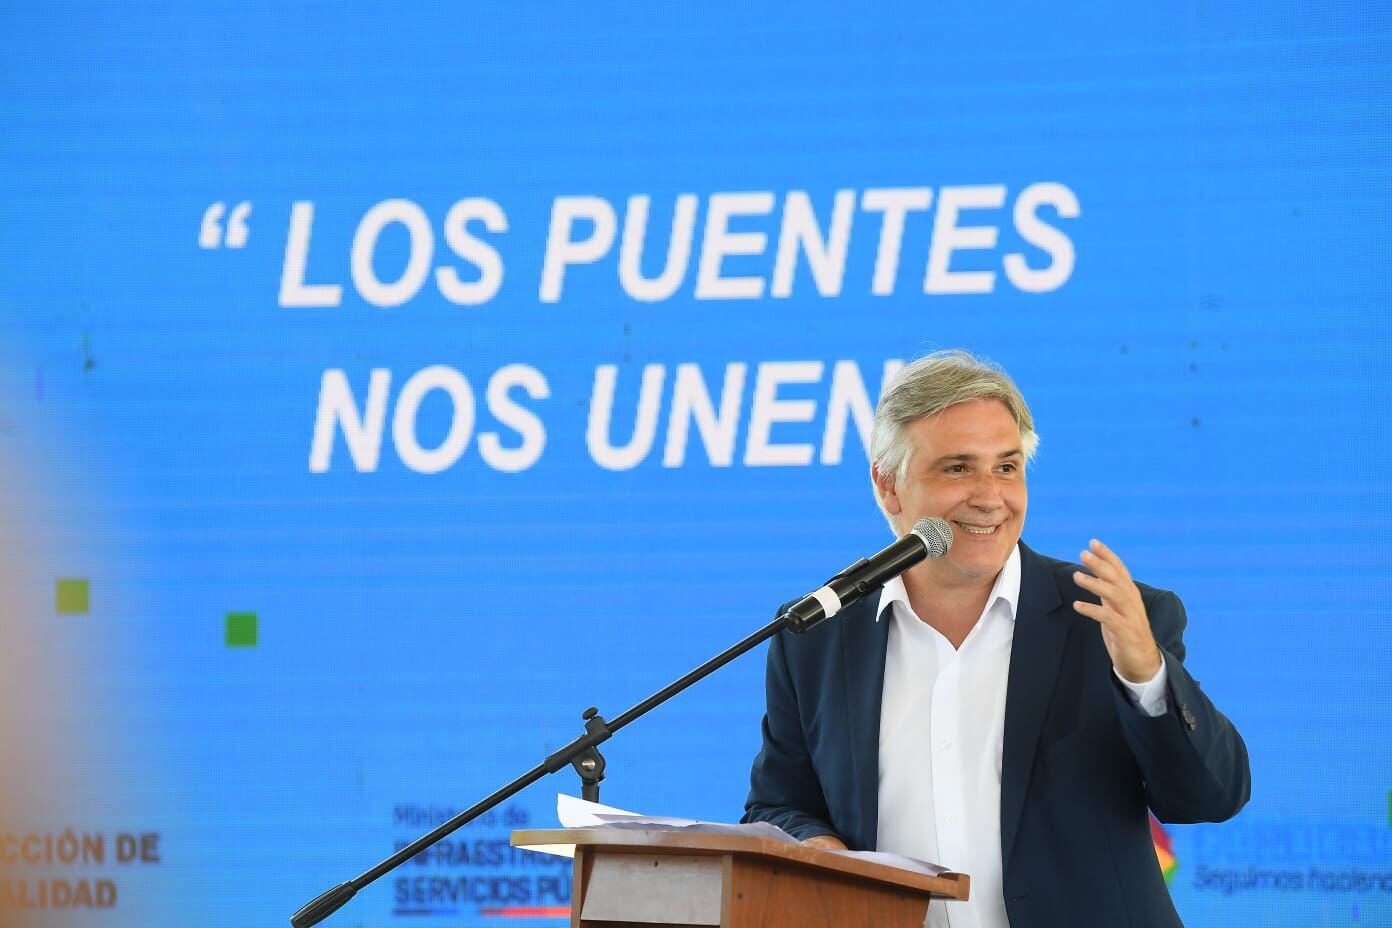 martín llaryora contra la “ley ómnibus”: no vamos a permitir que revienten el tejido productivo de la argentina